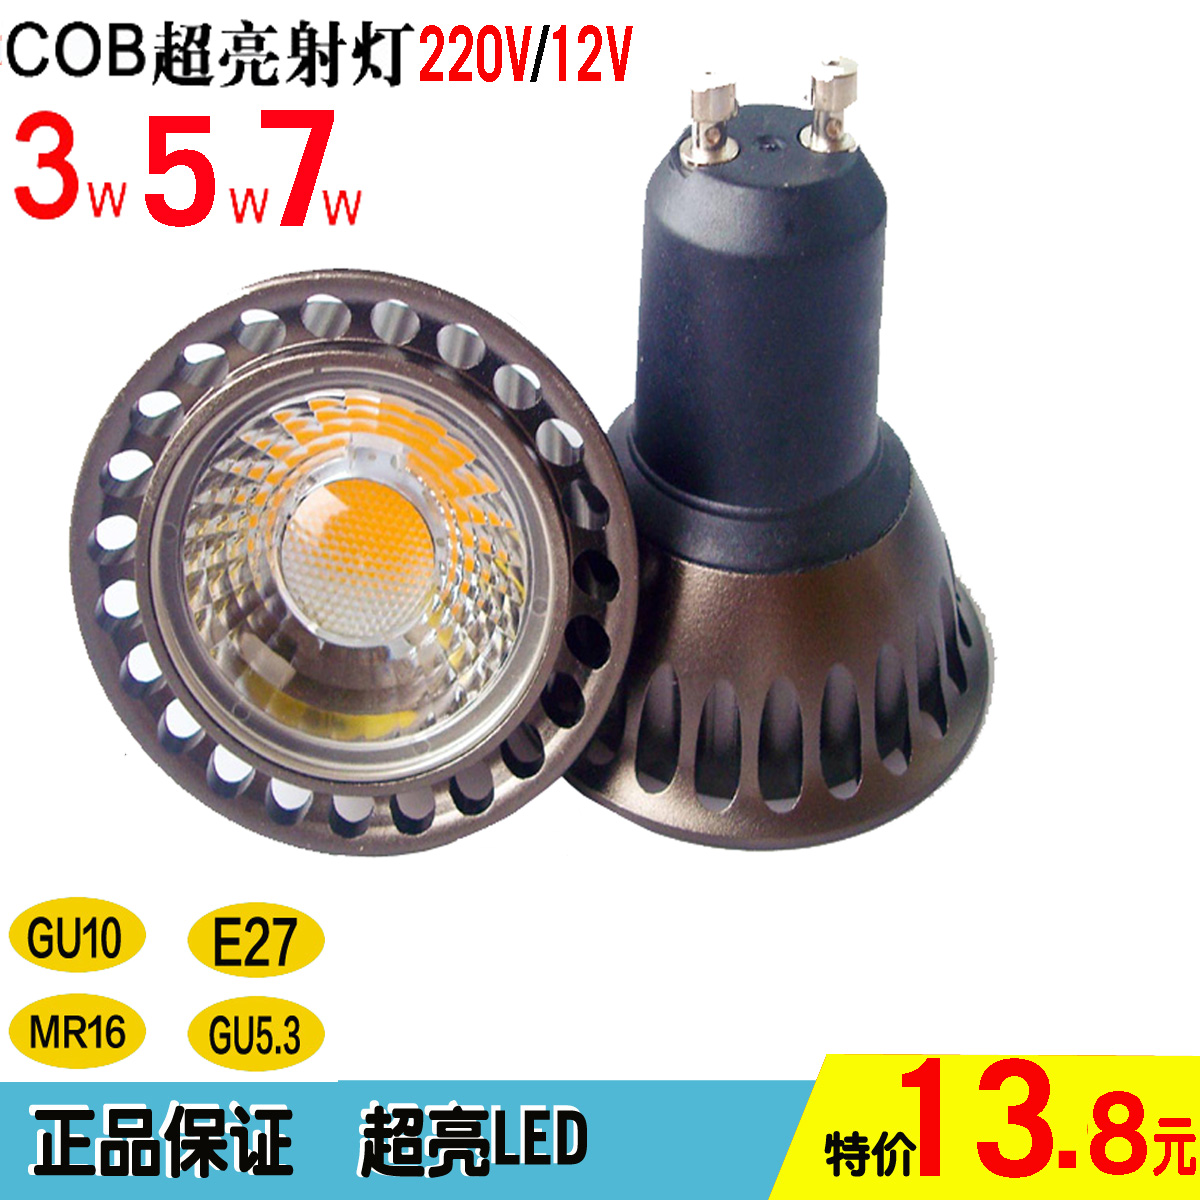 cob射灯LED灯杯 插口GU5.3 MR16 GU10 E27 220V 12v LED光源折扣优惠信息